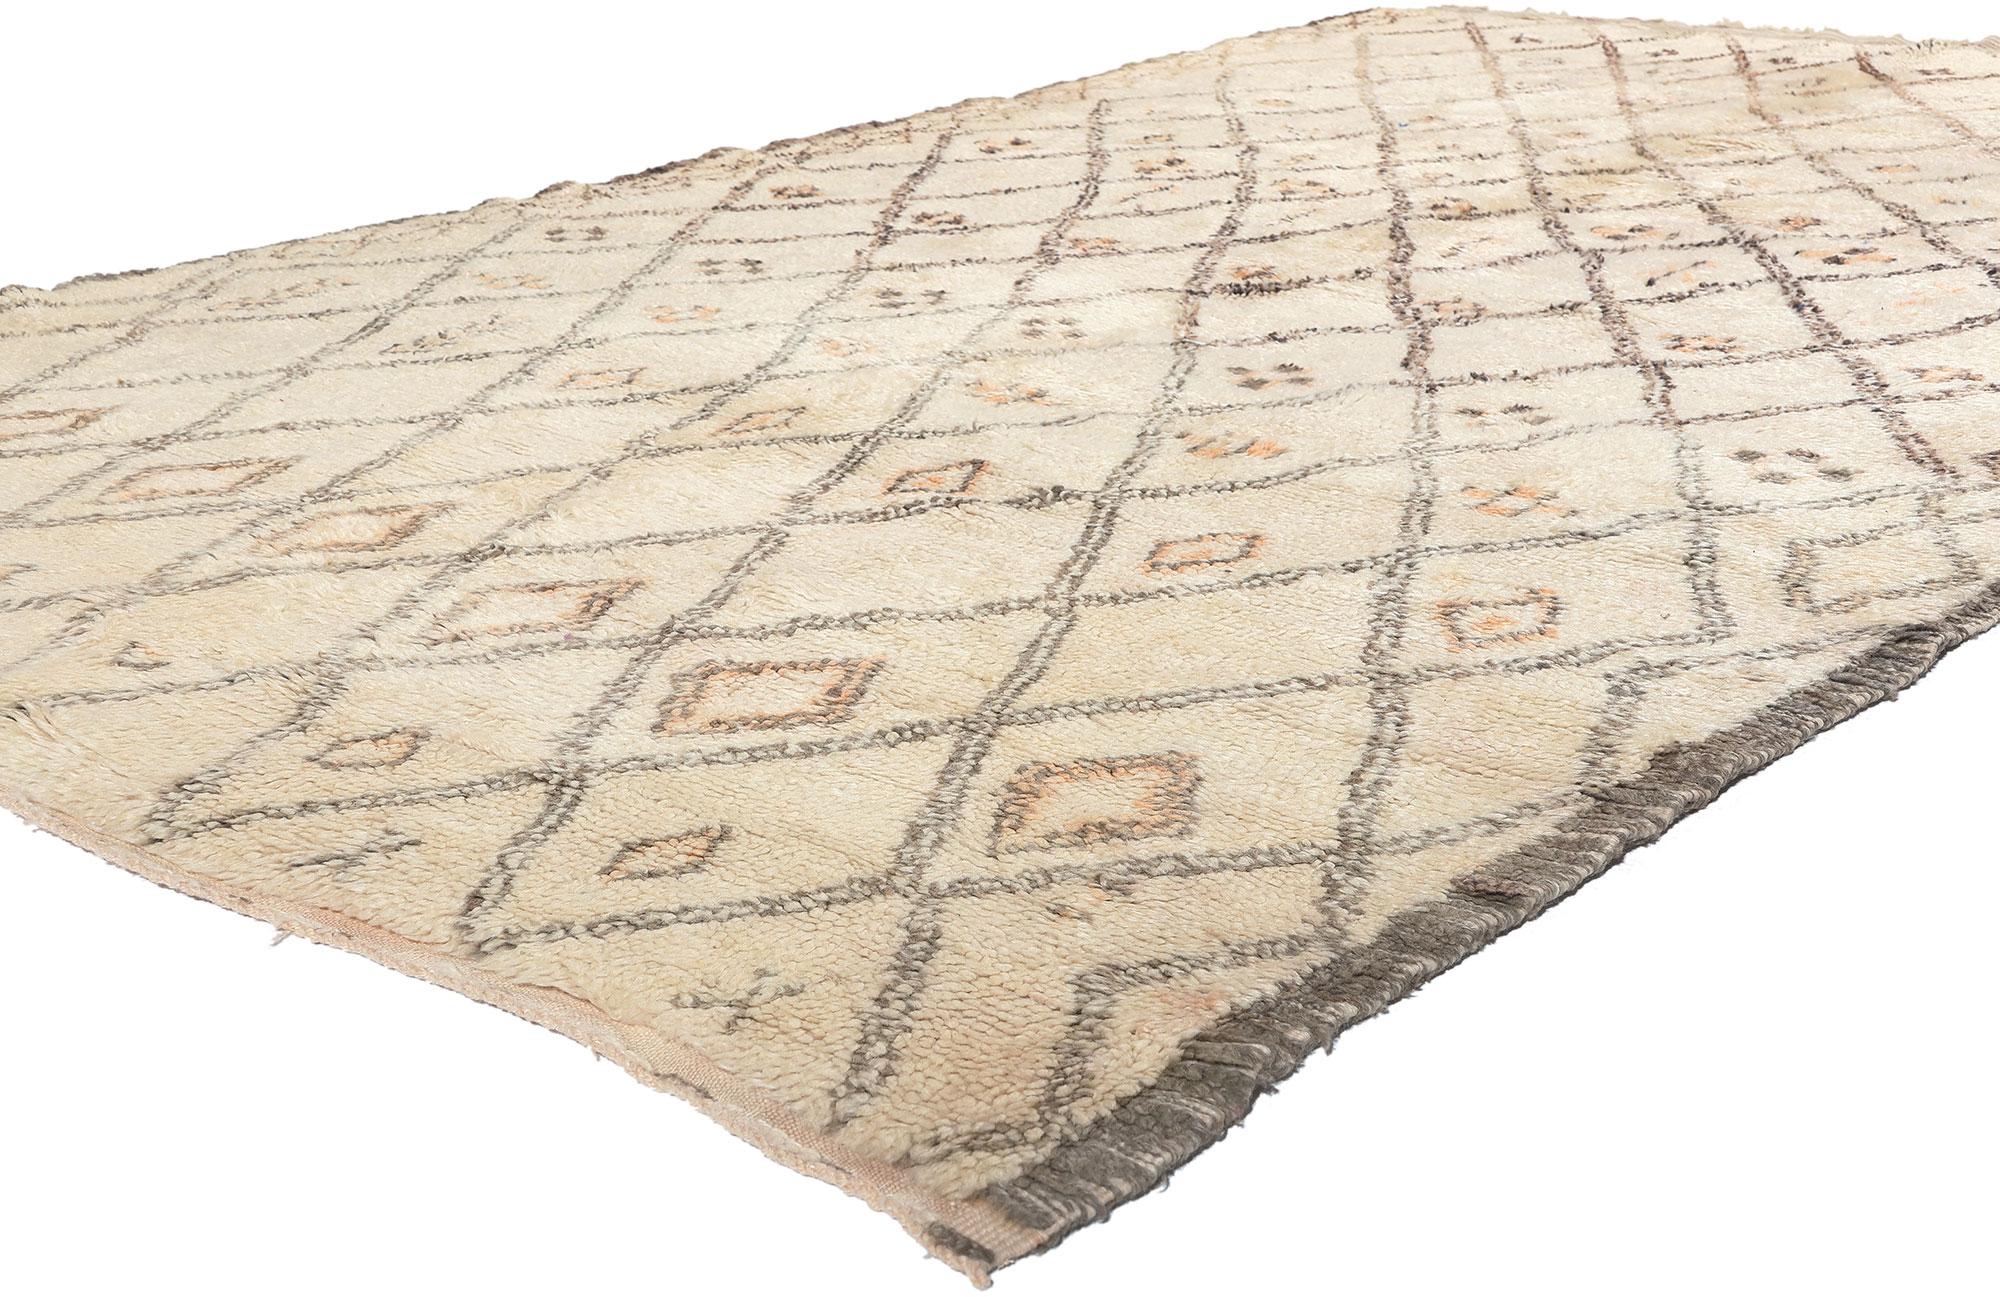 21400 Tapis marocain Vintage Beni Ourain, 05'07 x 09'09. Issus du riche héritage de la tribu des Beni Ourain, qui fait partie intégrante de l'ethnie berbère du Maroc, ces tapis marocains sont méticuleusement façonnés à partir de laine de mouton